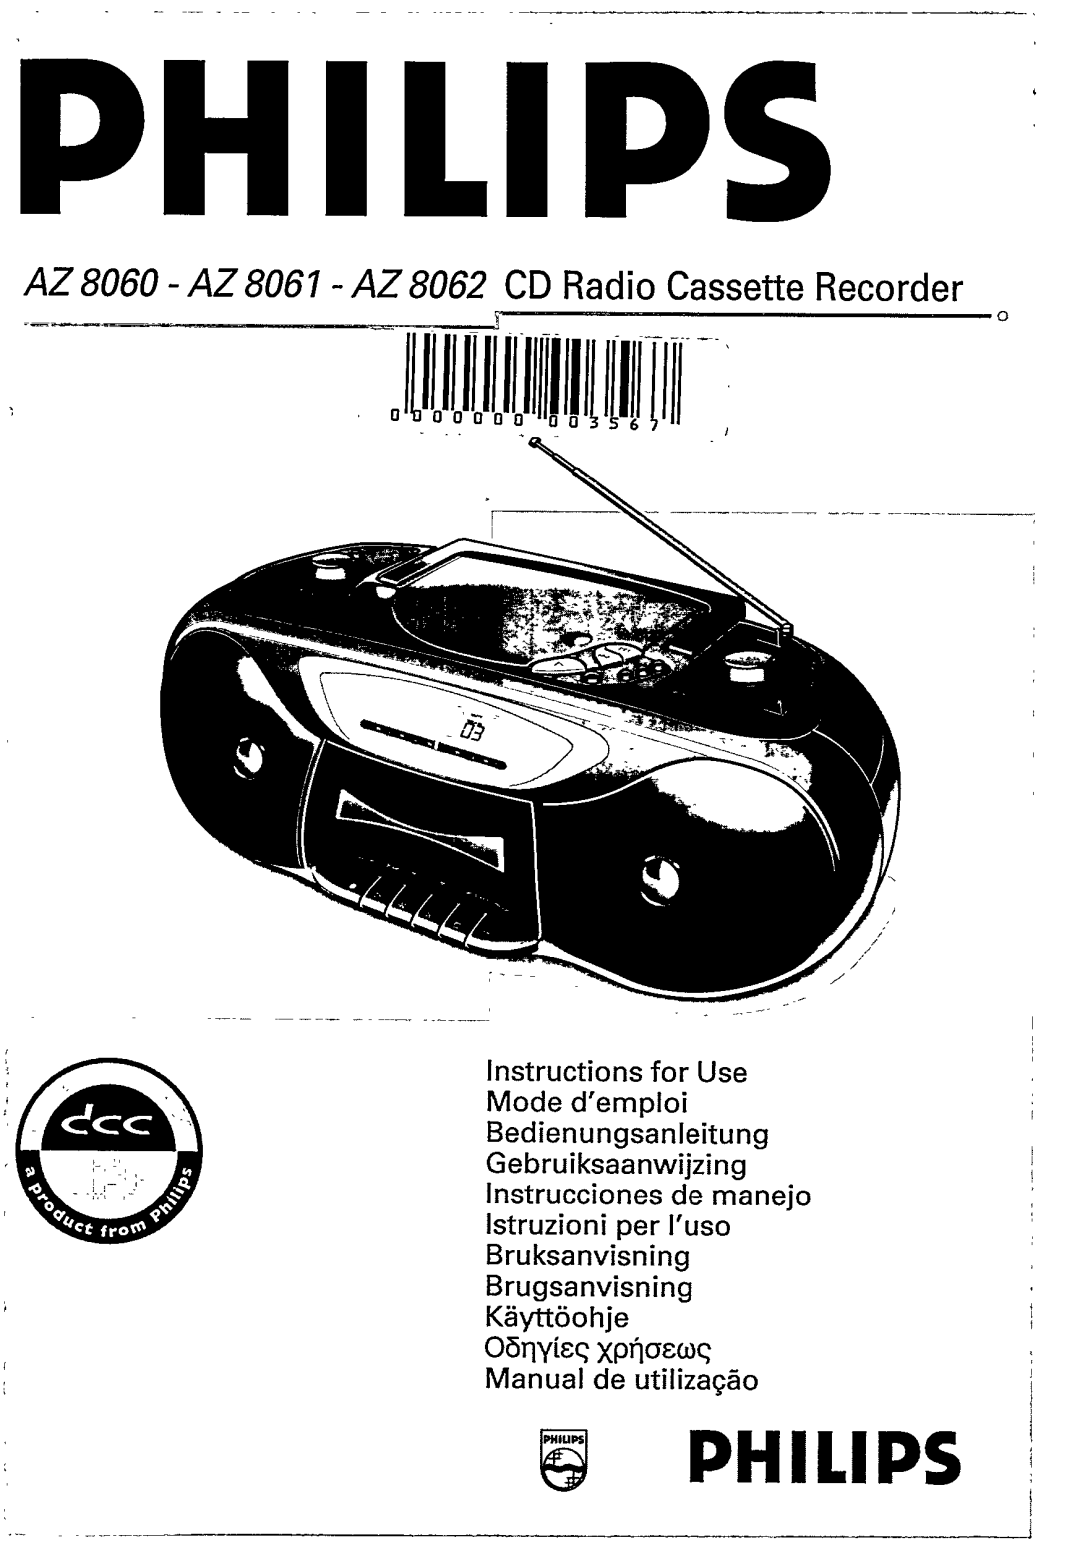 Magnavox AZ8061, AZ8062, AZ 8060 manual 